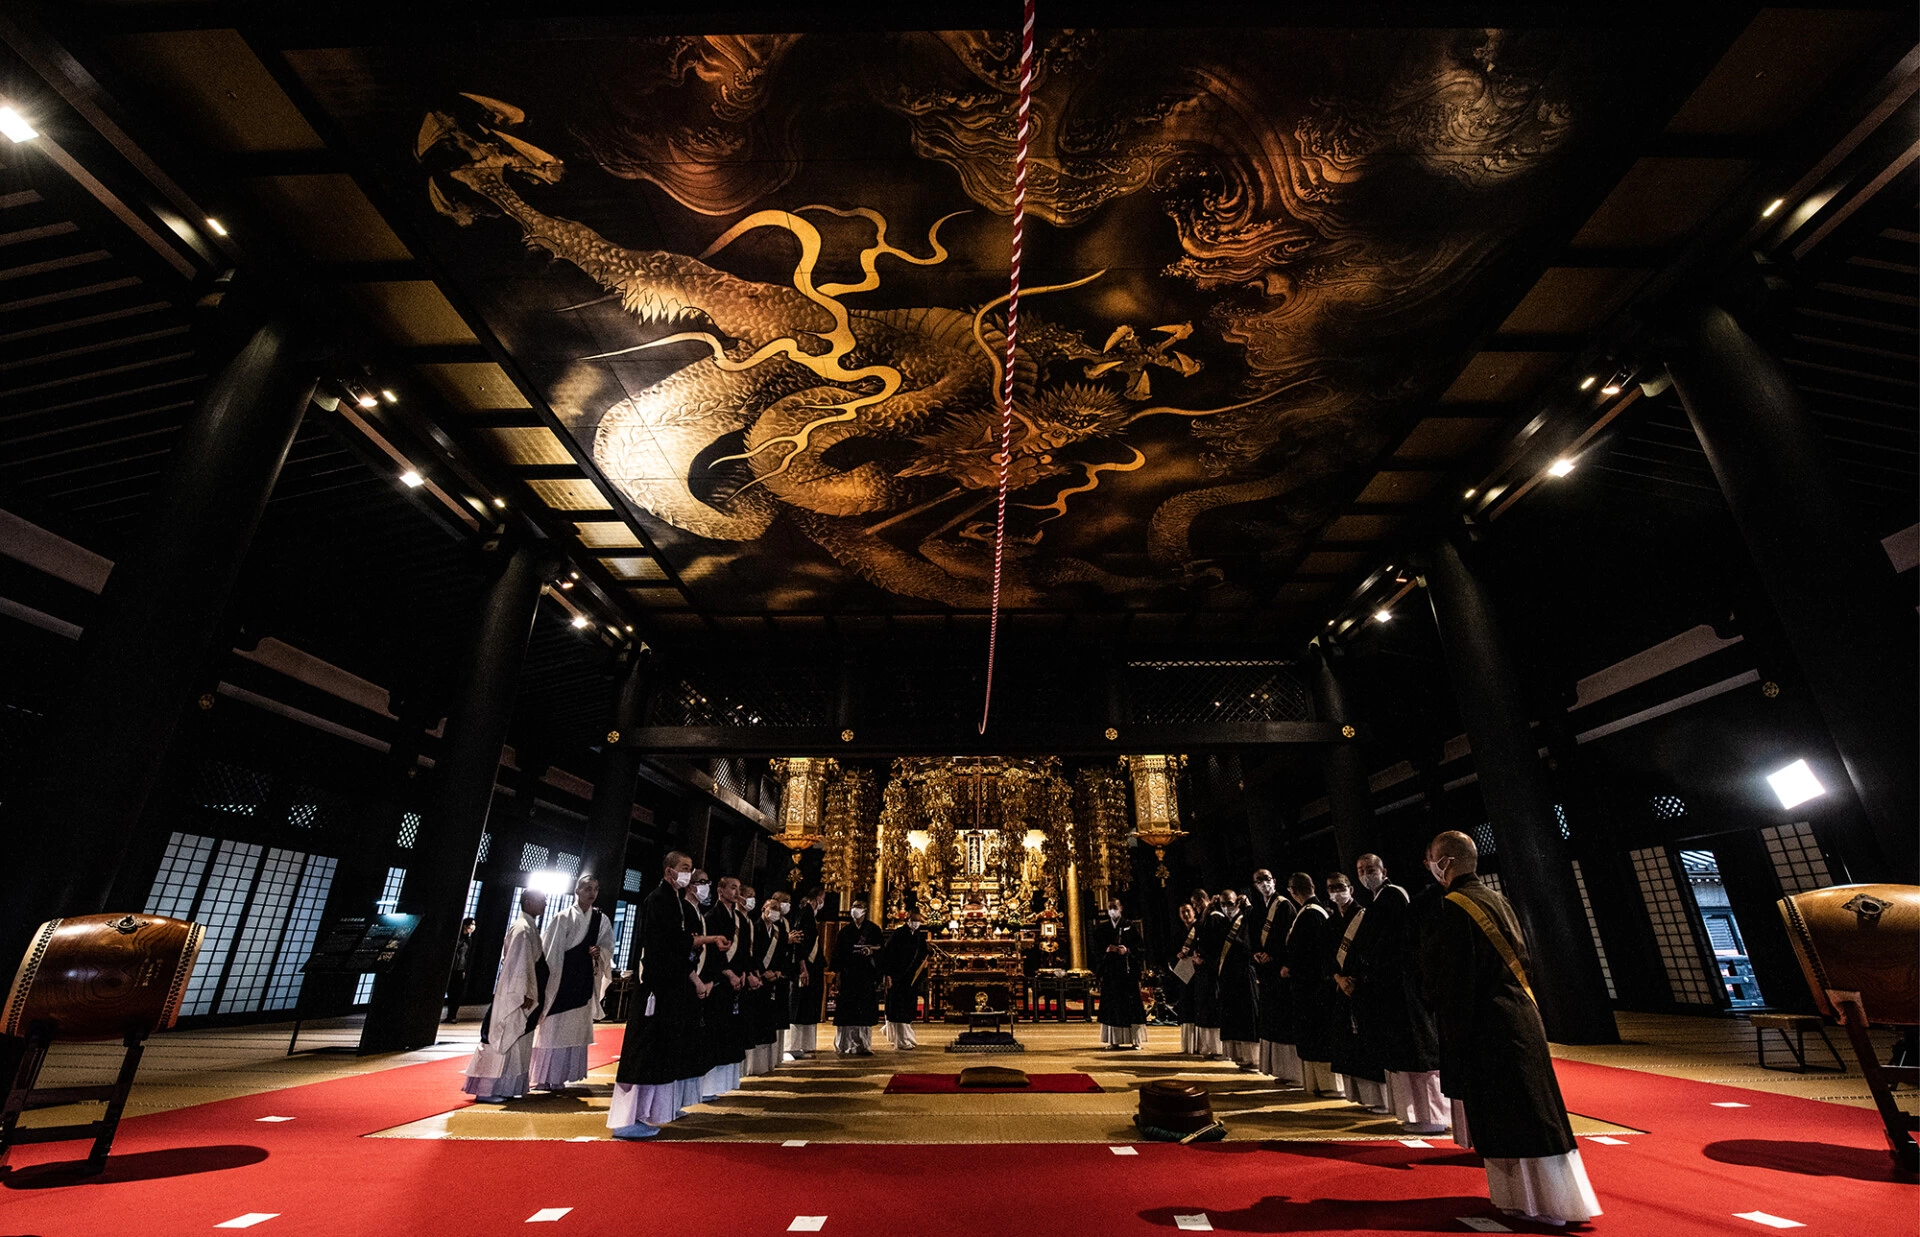 世界平和・コロナ終息を願い“日蓮聖人800年祈念”奉納ライブペイント